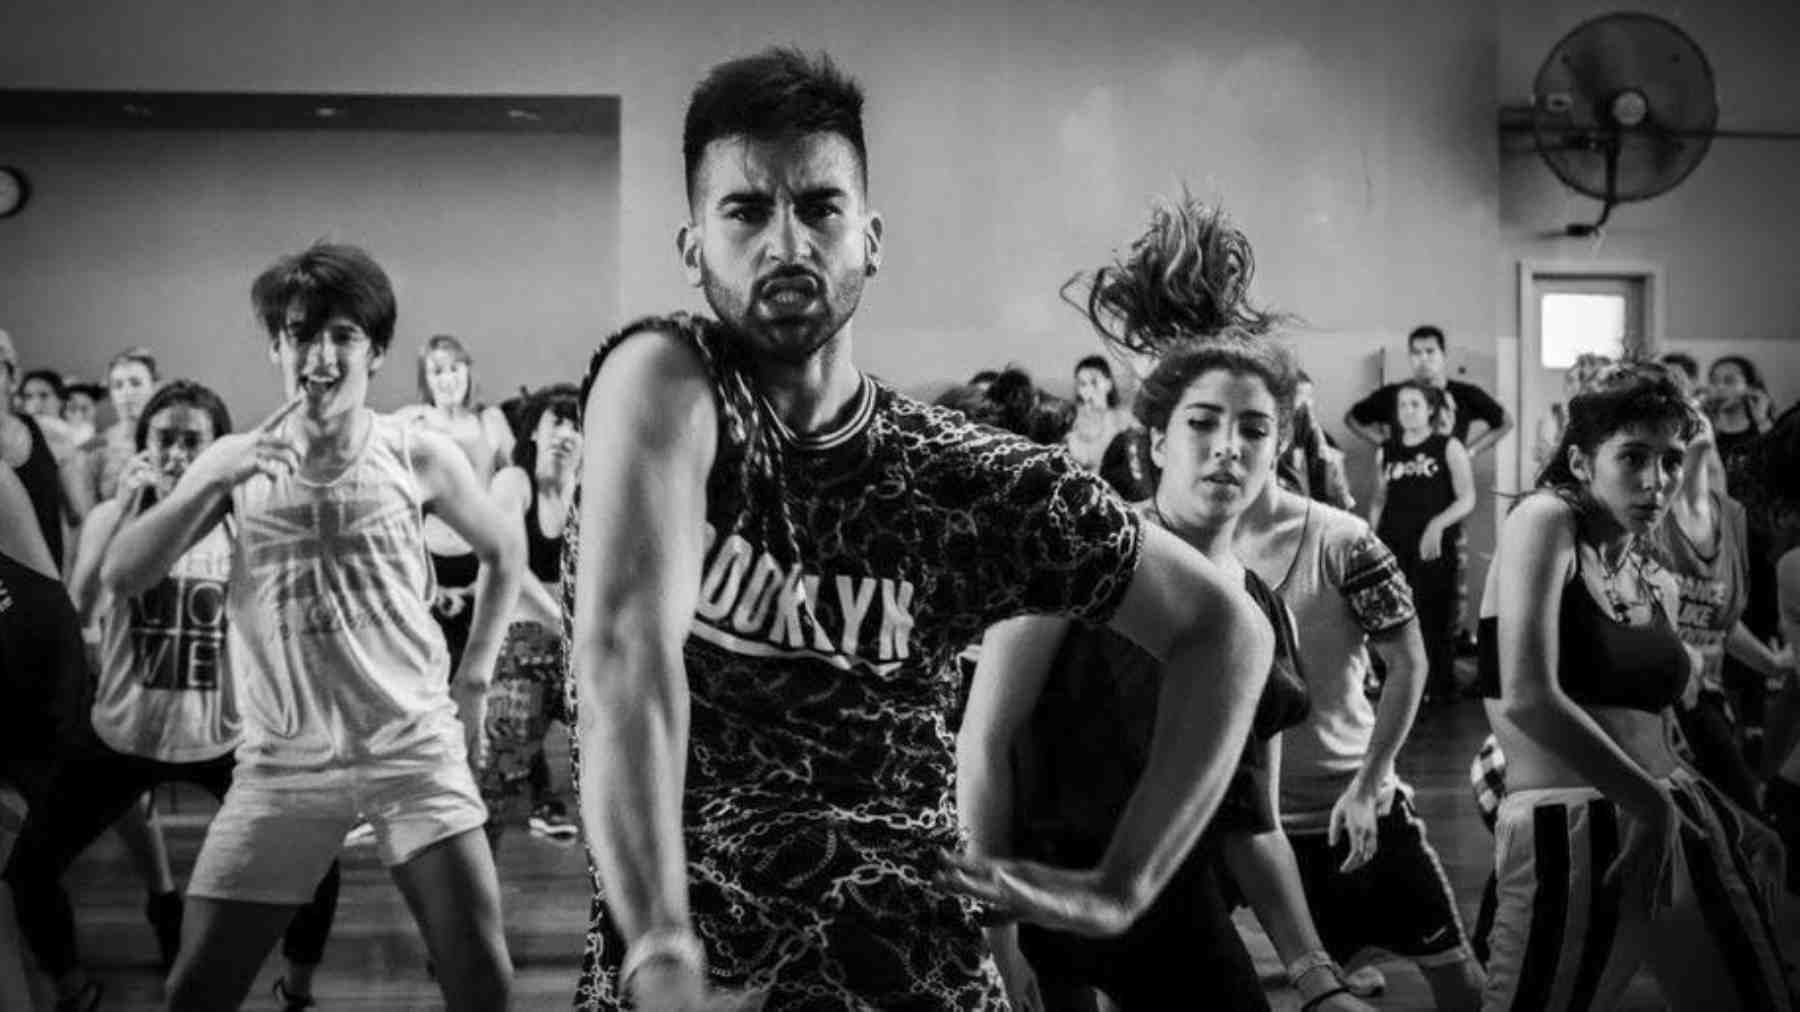 El bailarín influencer con millones de seguidores que este domingo bailará en Pamplona